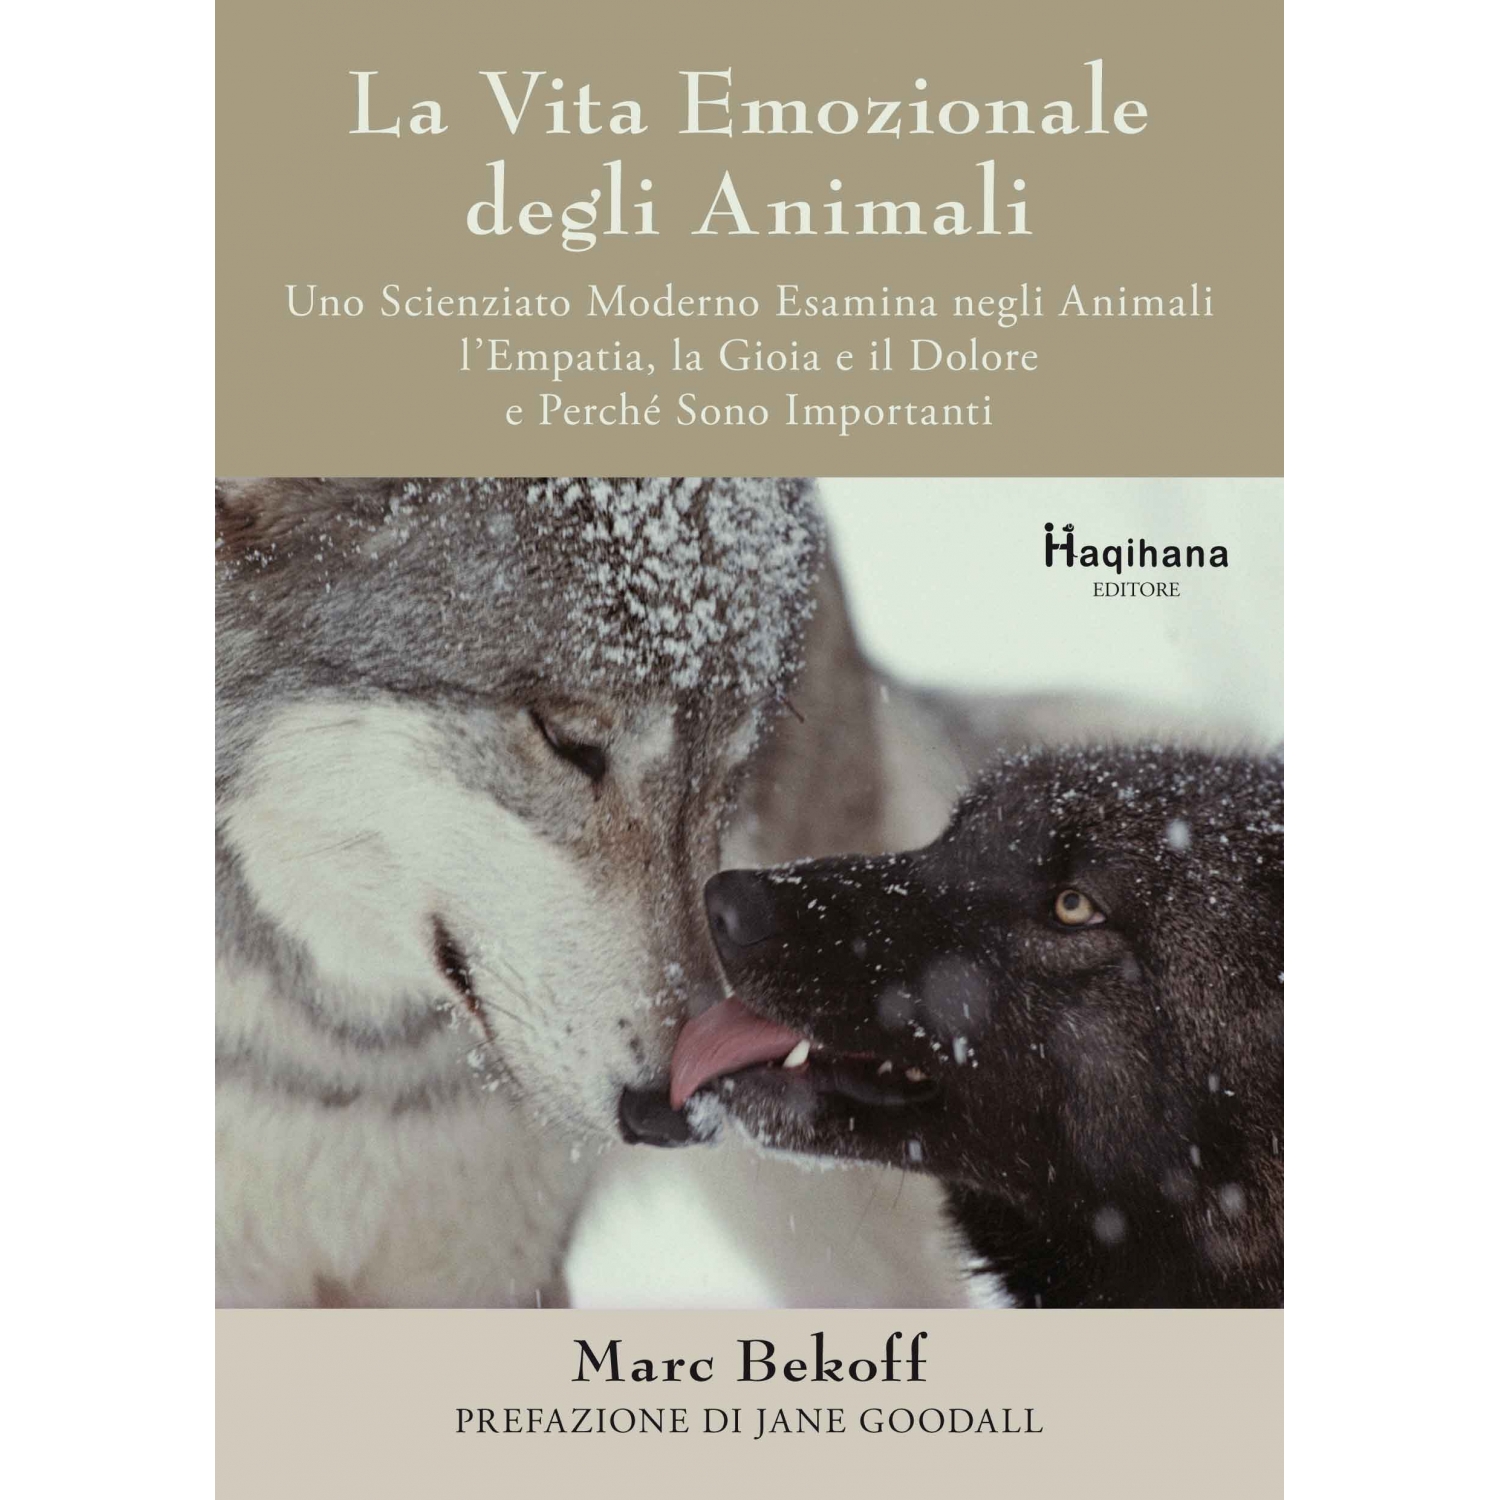 La vita emozionale degli animali (ITALIAN ONLY)